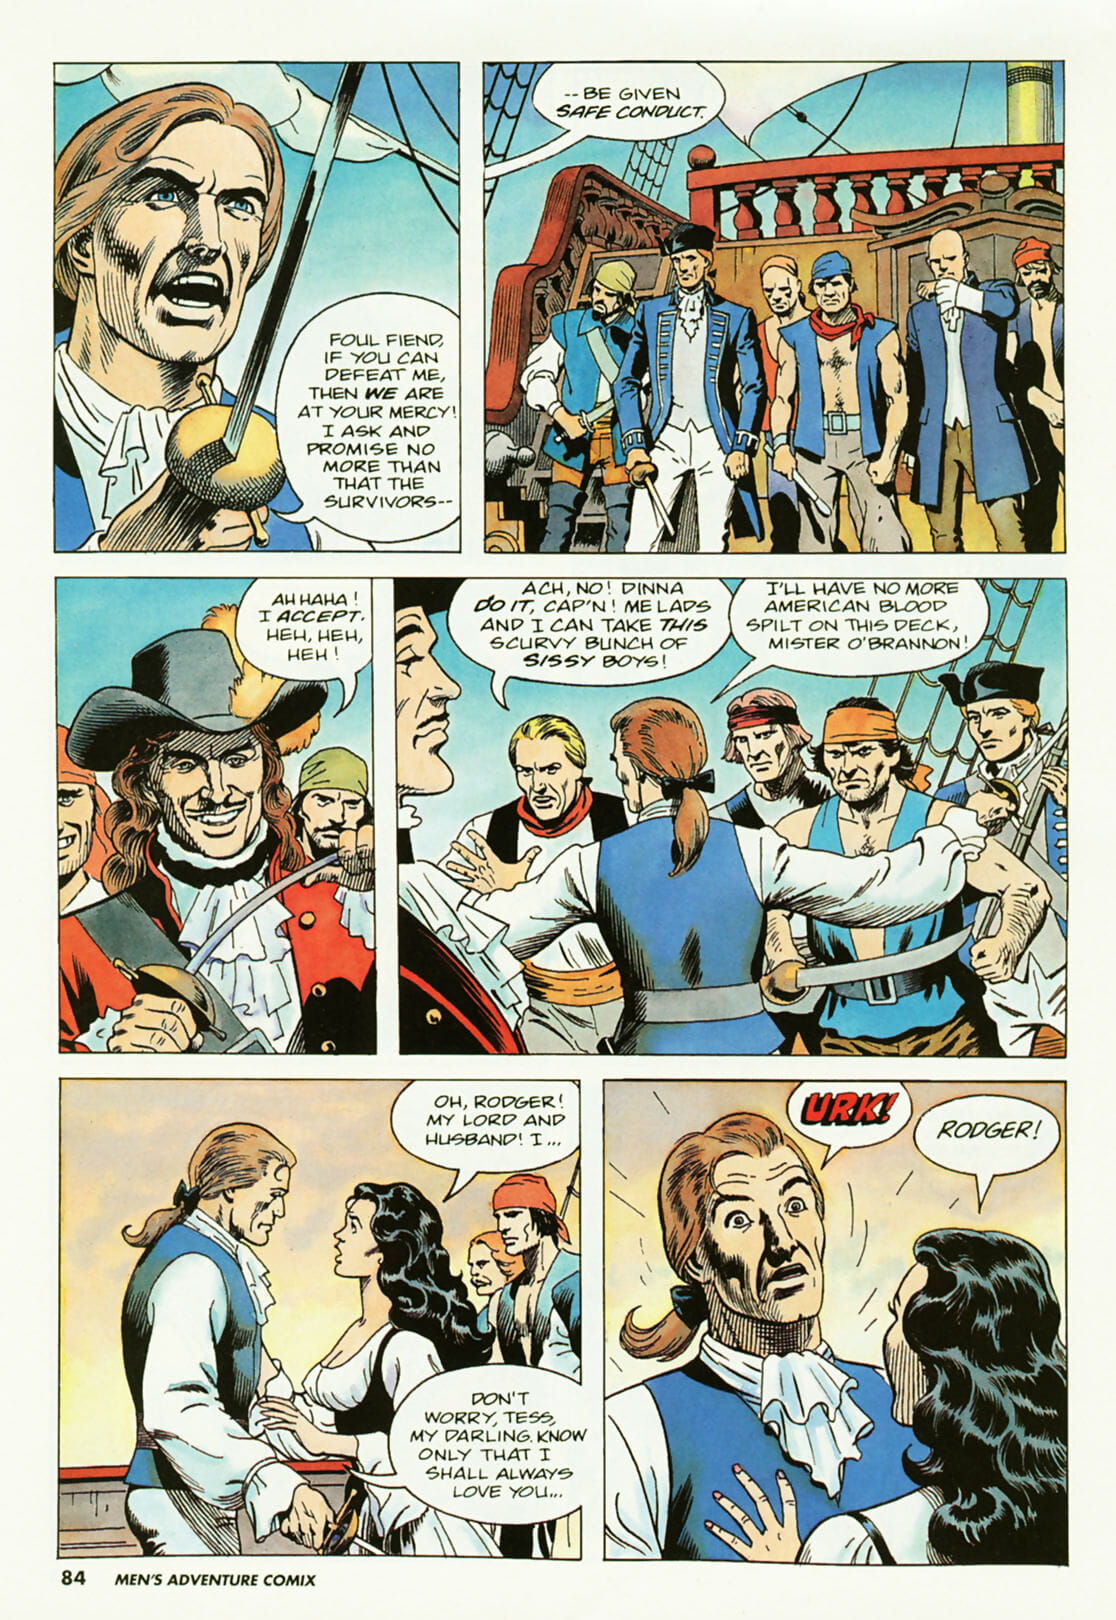 Penthouse Mens Adventure Comix #2 - part 2 page 1